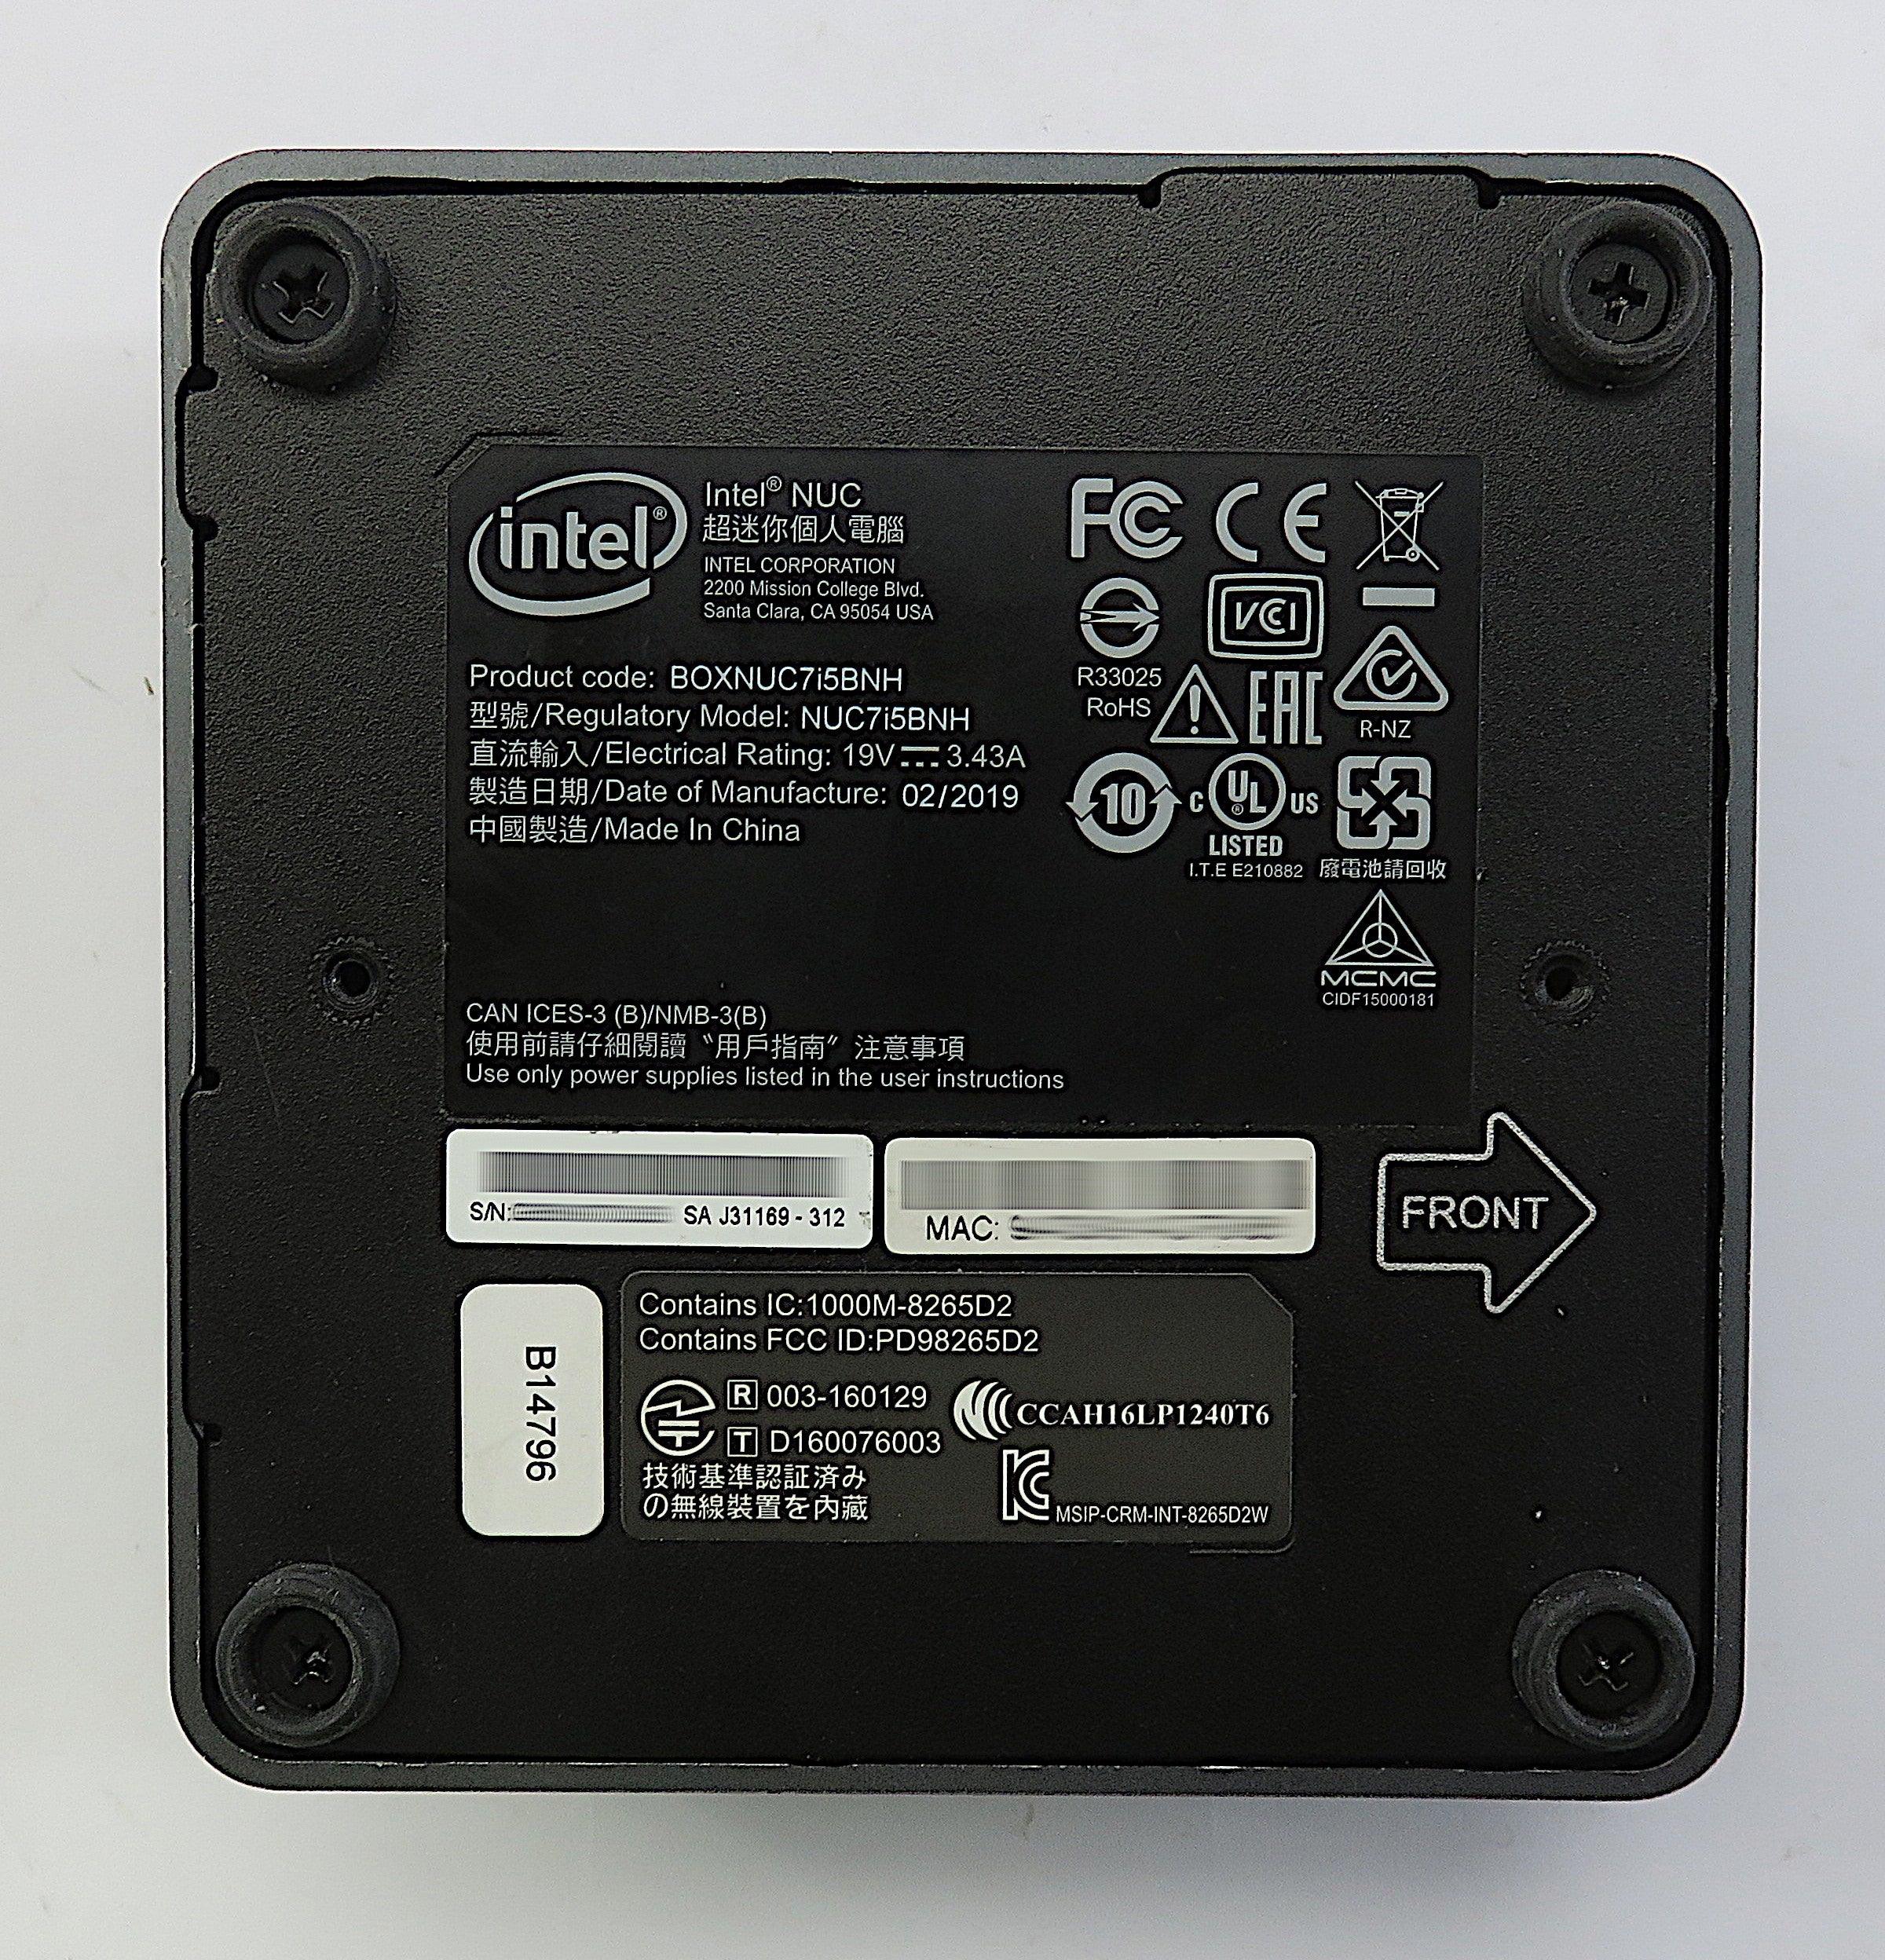 Intel NUC7i5BNH PC, i5-7260U CPU, 16GB RAM, 256GB NVMe, 512GB SSD